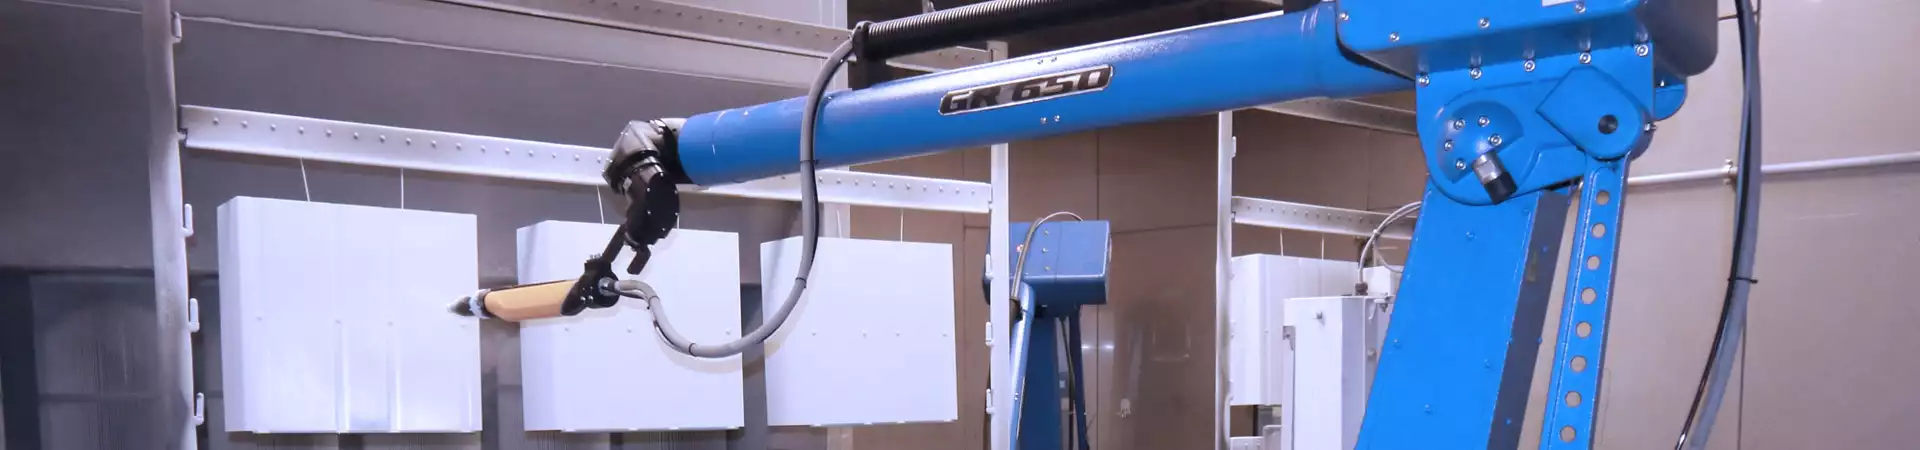 Headerbild: Oberflaechenveredelung, Roboter in Kabine pulvert Blechteile weiss